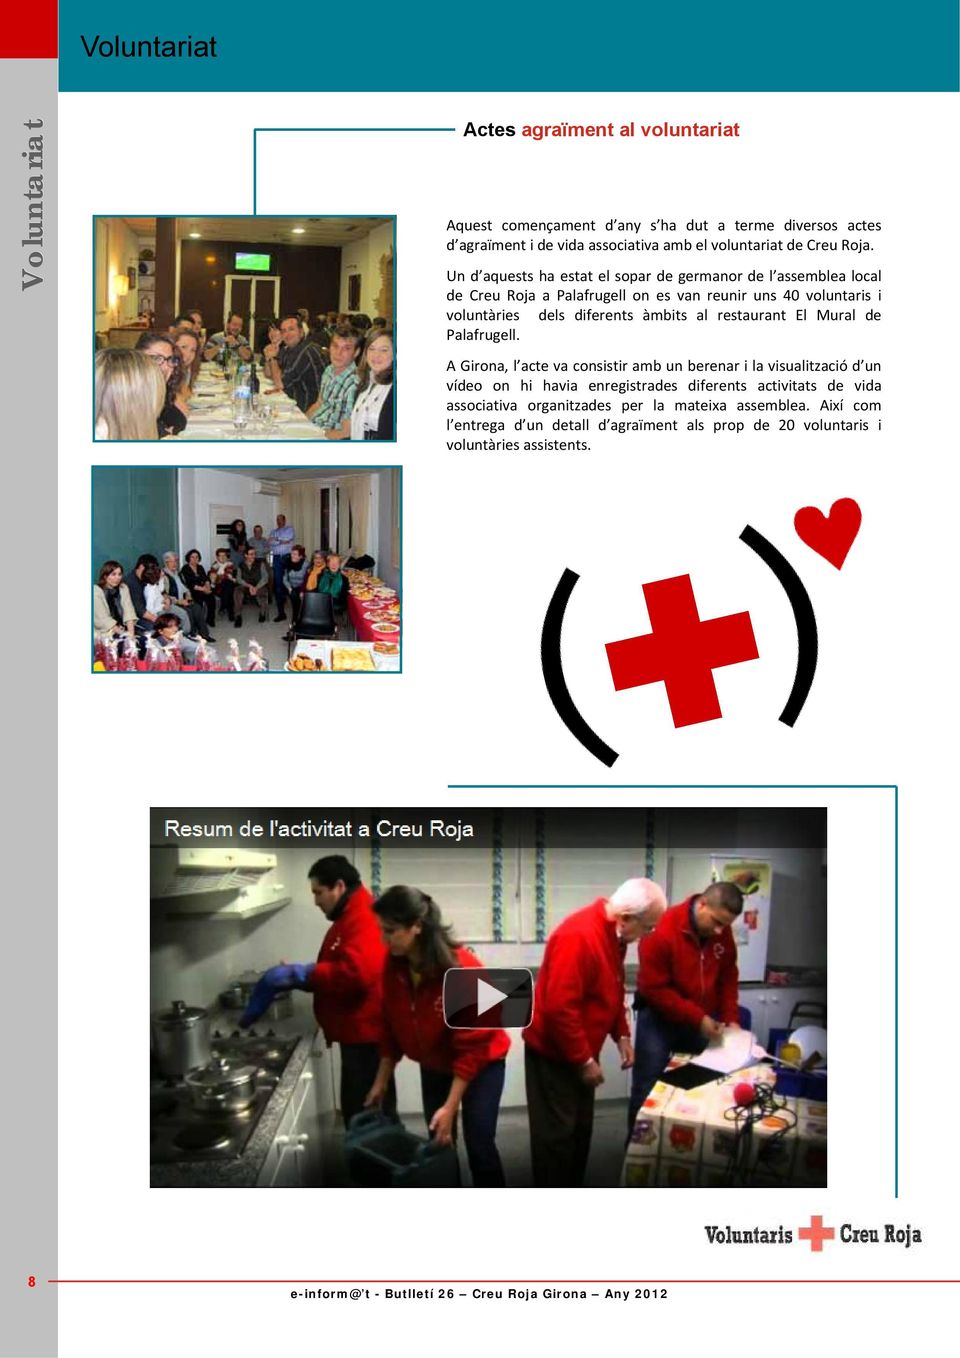 Un d aquests ha estat el sopar de germanor de l assemblea local de Creu Roja a Palafrugell on es van reunir uns 40 voluntaris i voluntàries dels diferents àmbits al